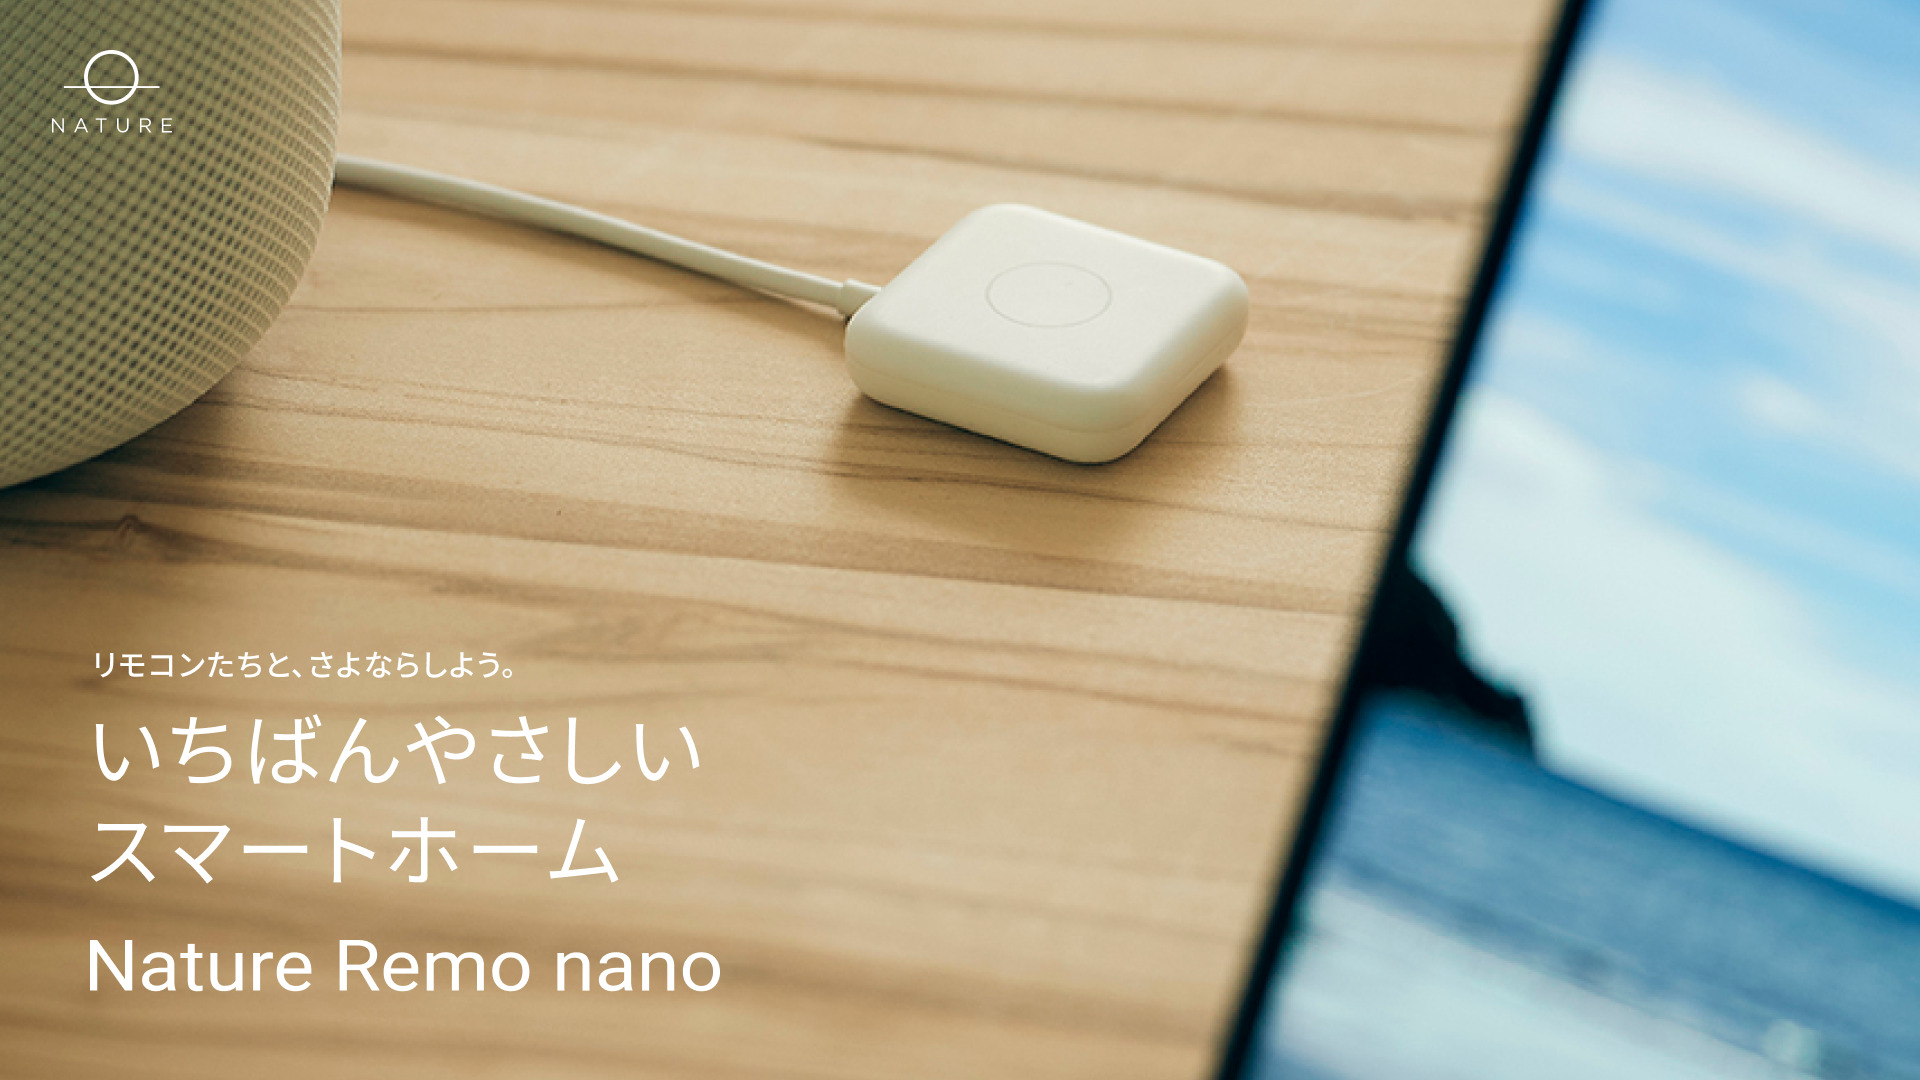 価格良し・小型良し。3980円のMatter対応スマートリモコン「Nature Remo nano」が発売